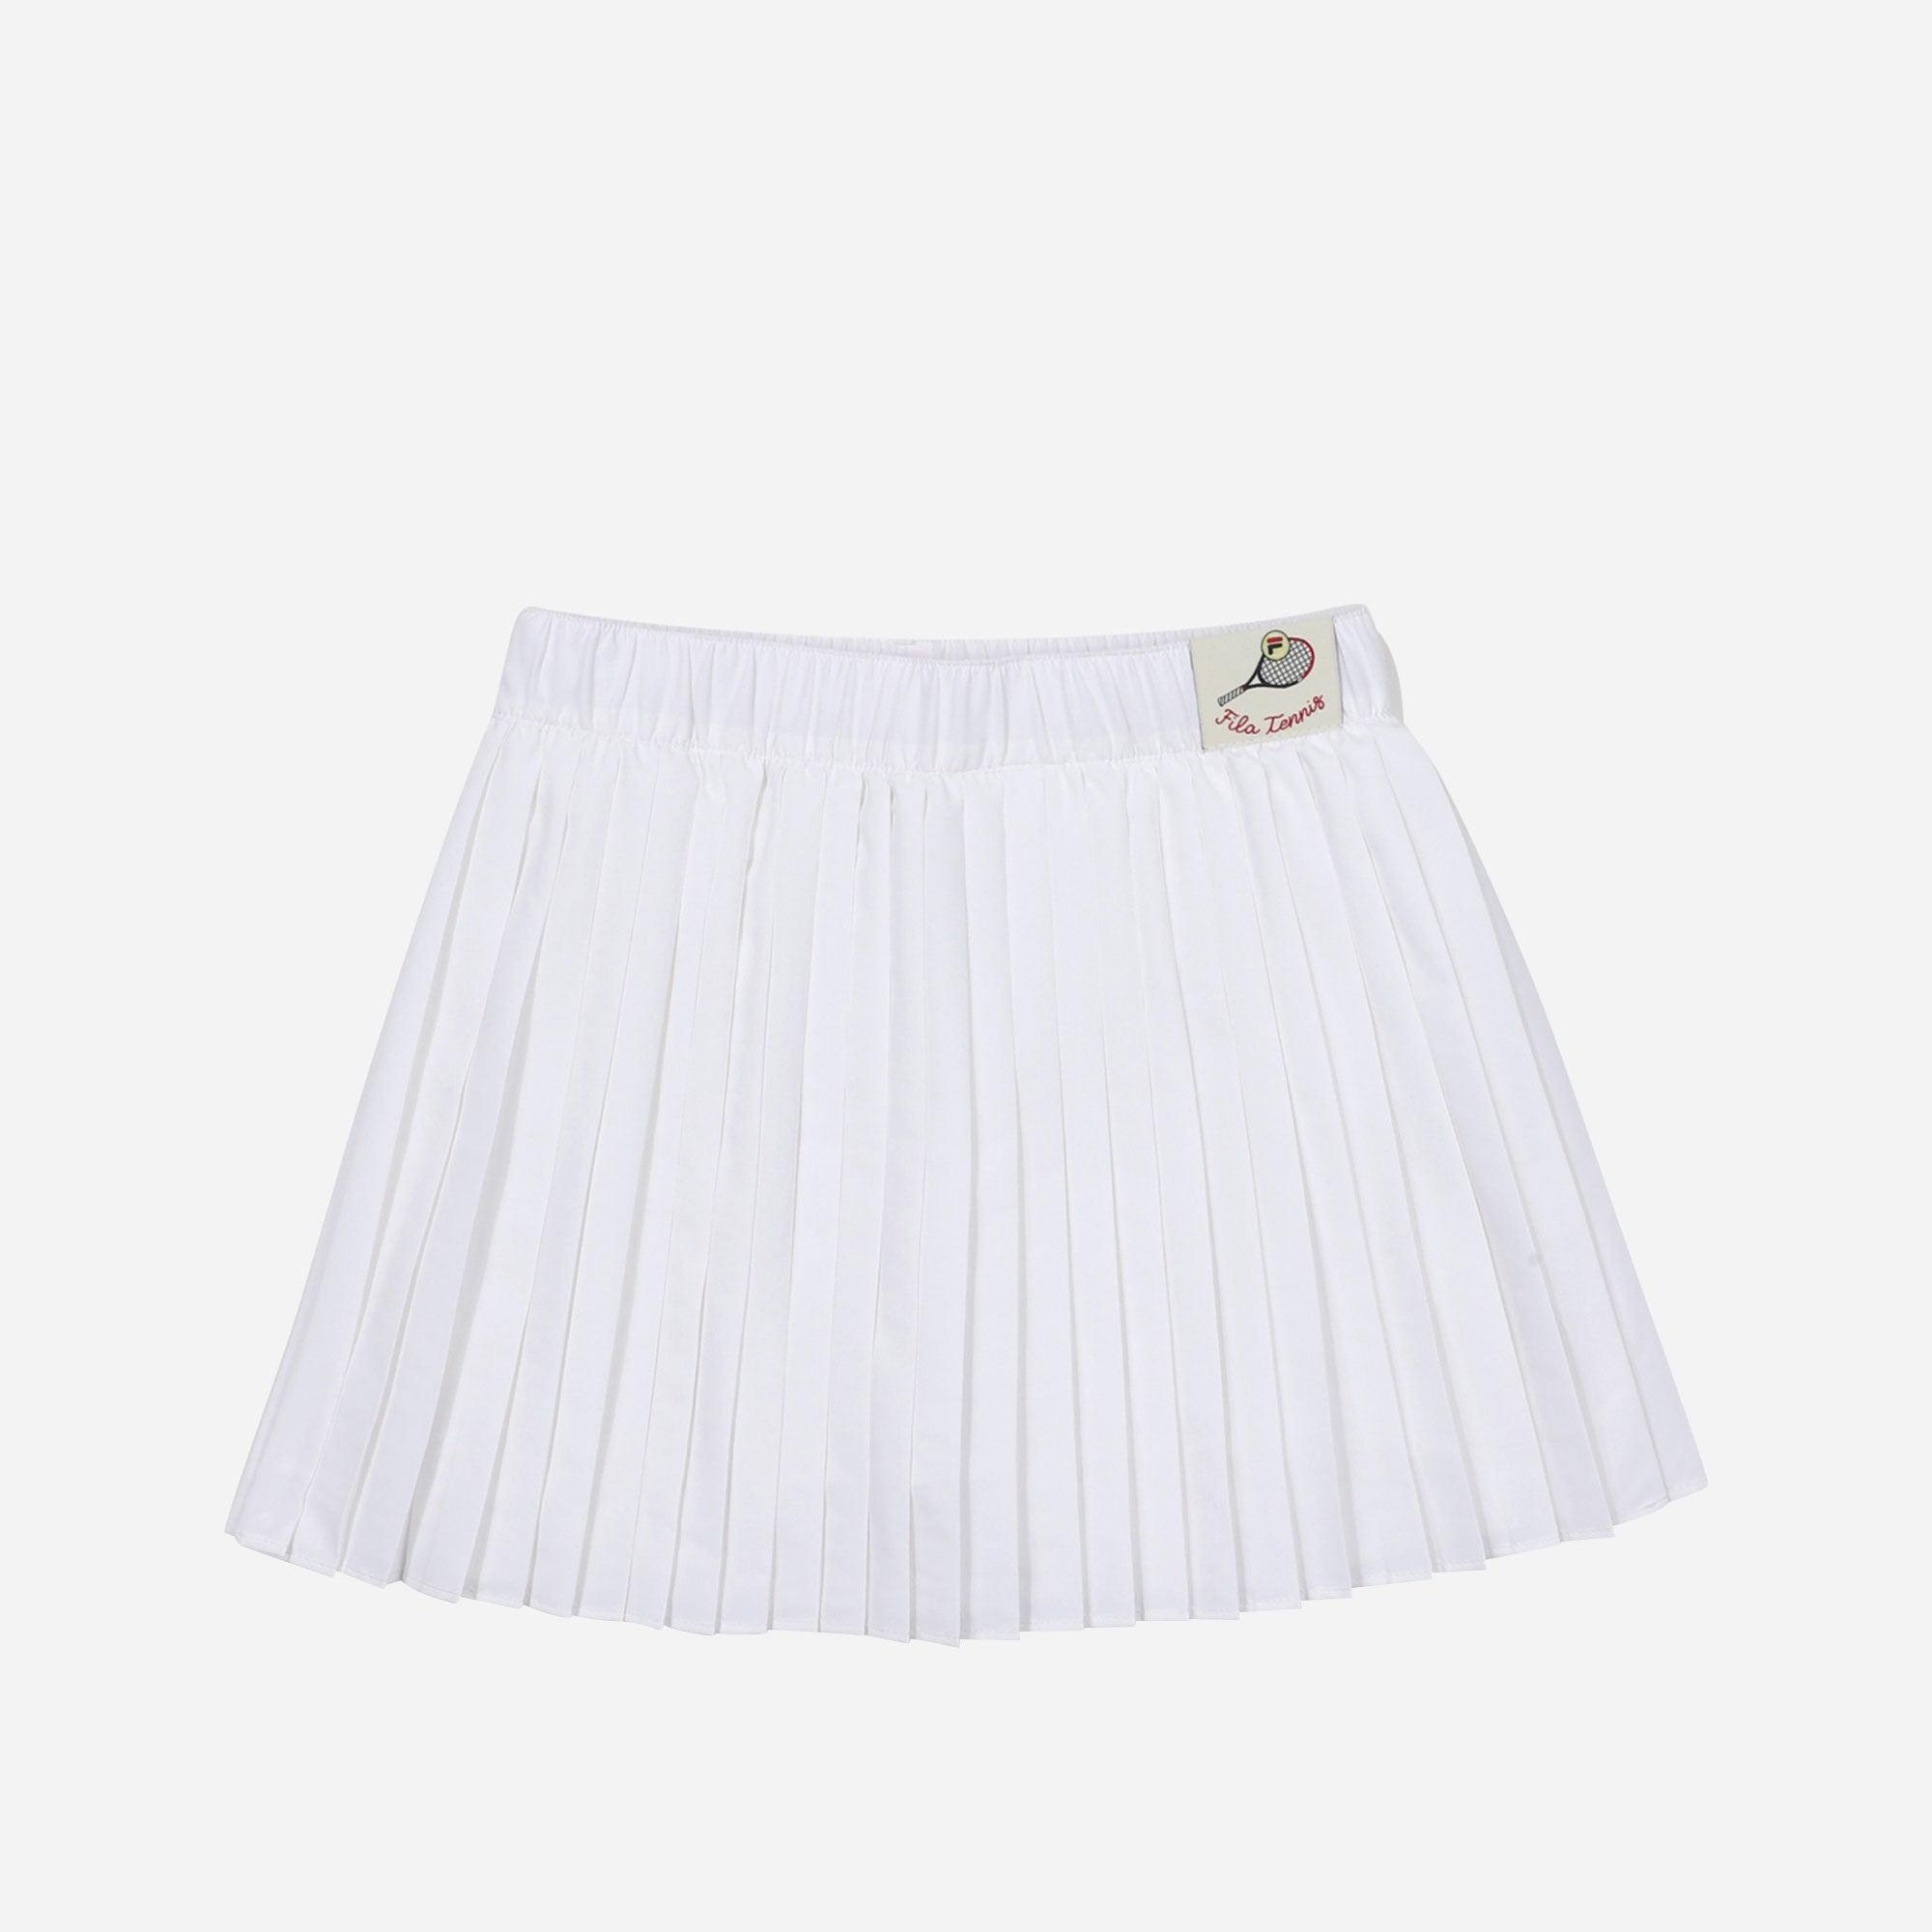 Chân váy thời trang bé gái Fila Tennis Line Pleats - FK2SKF1201F-OWH